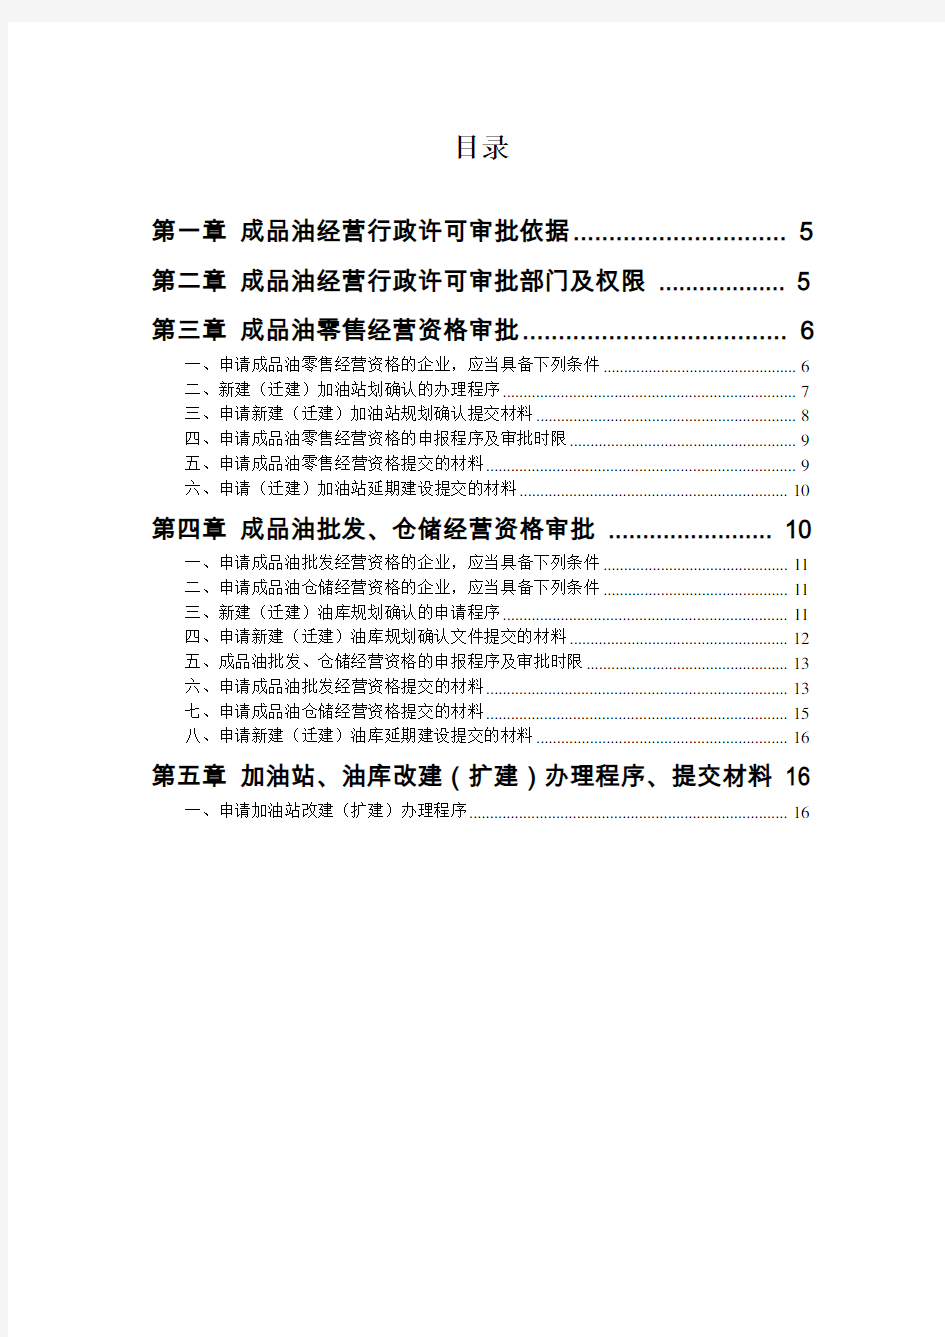 (精选)黑龙江省成品油经营企业指引手册